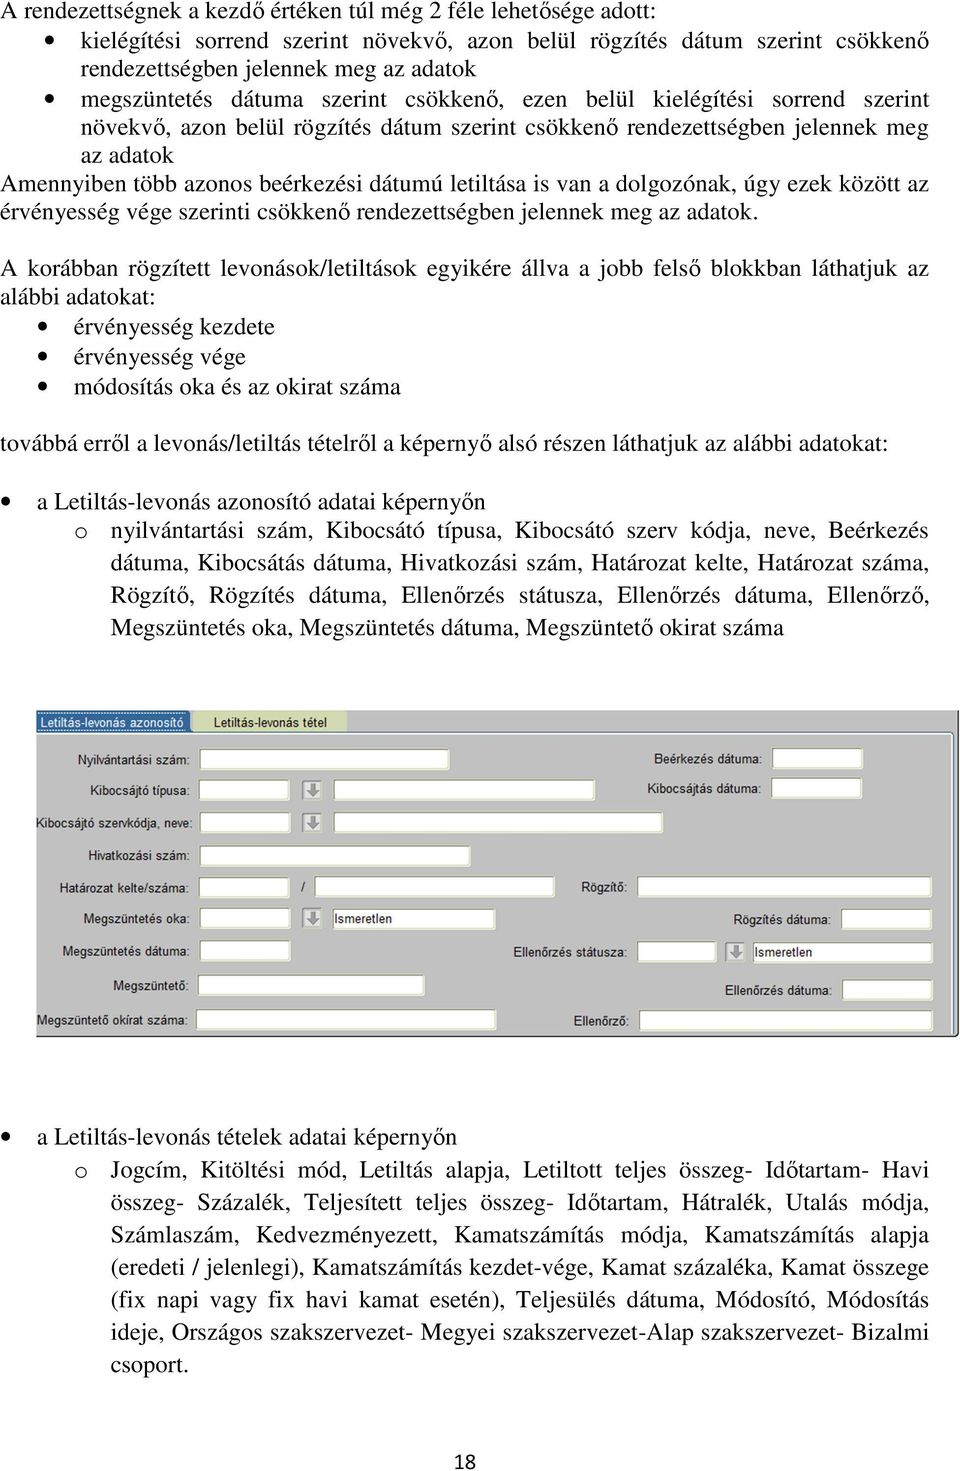 KIRA OKTATÁSI TANANYAG - PDF Ingyenes letöltés